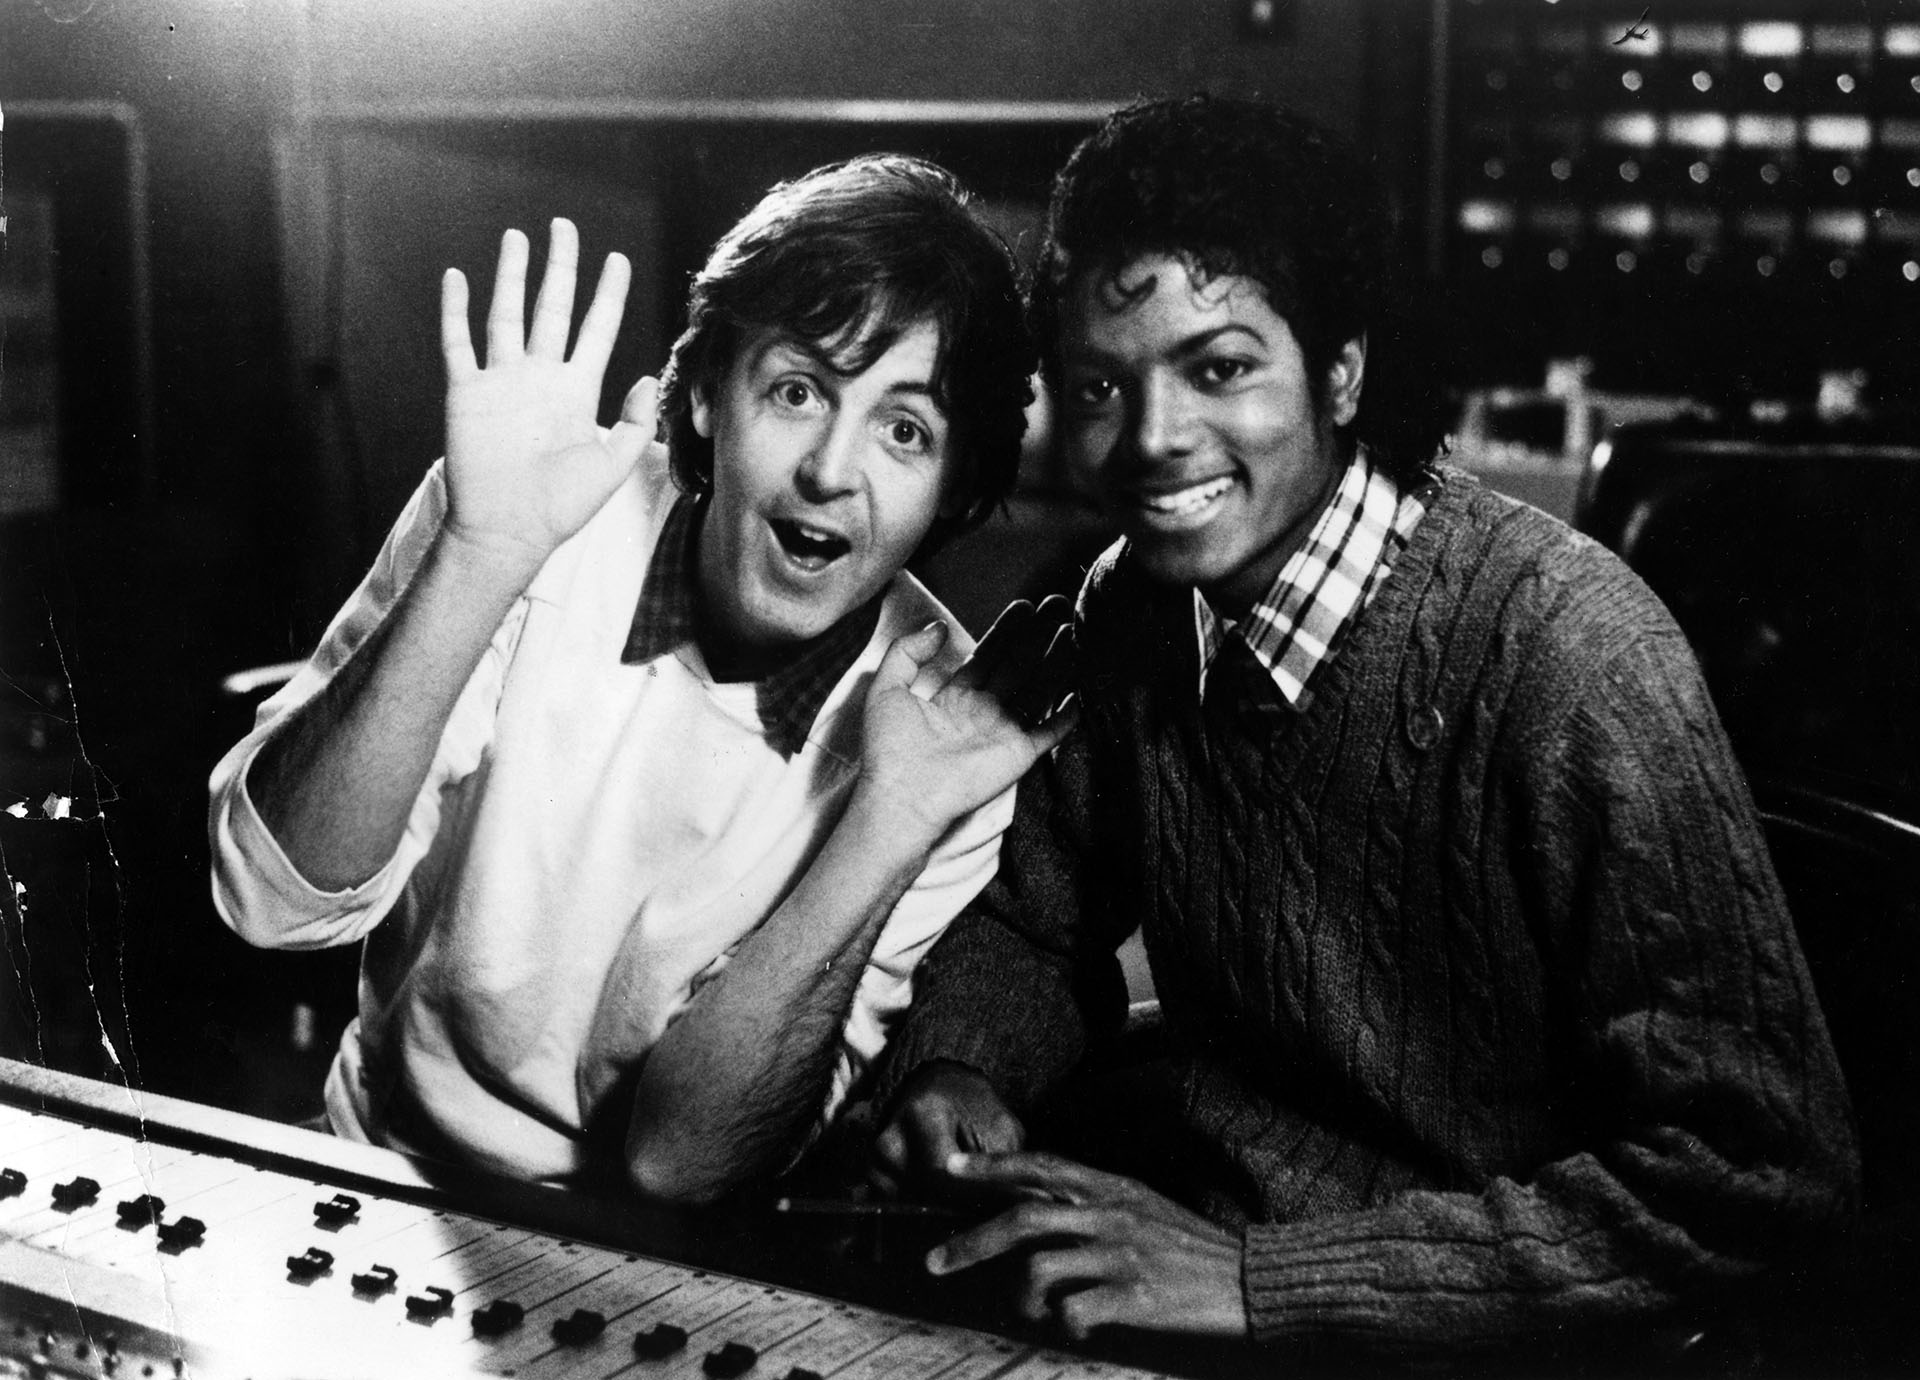 Michael Jackson y Paul McCartney grabaron dos temas juntos a inicios de la década del 80. Publicaron uno cada uno en sus álbums solistas. Después Michael Jackson compraría los derechos de las canciones de los Beatles (Photo by Afro American Newspapers/Gado/Getty Images)